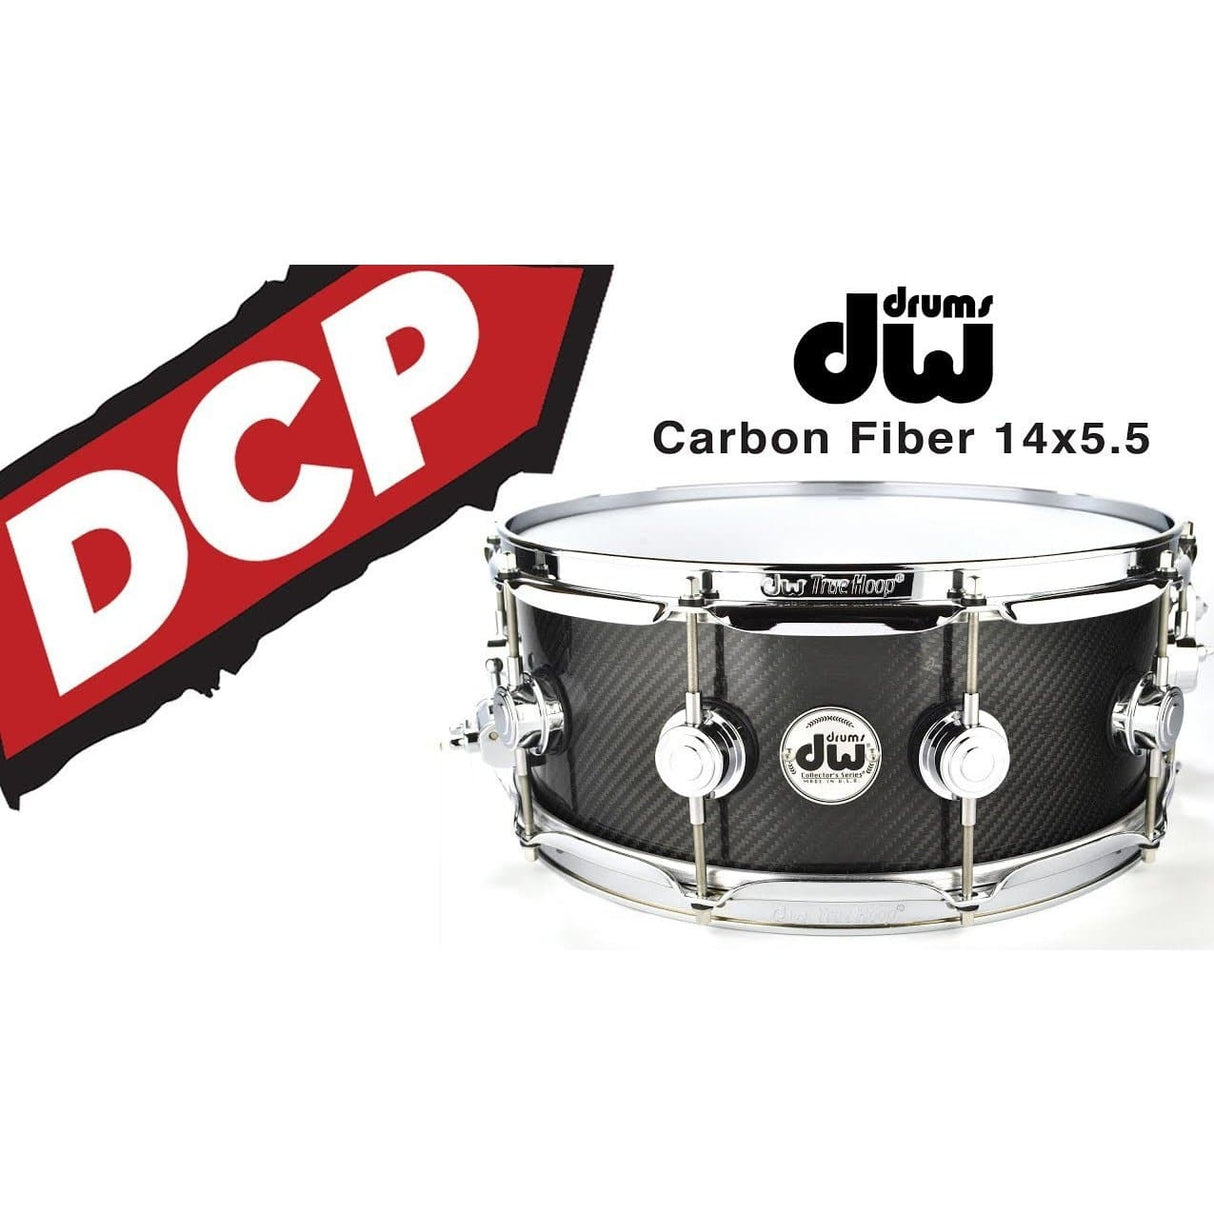 DW Collectors Carbon Fiber Snare Drum 14x5.5 Chrome Hardware